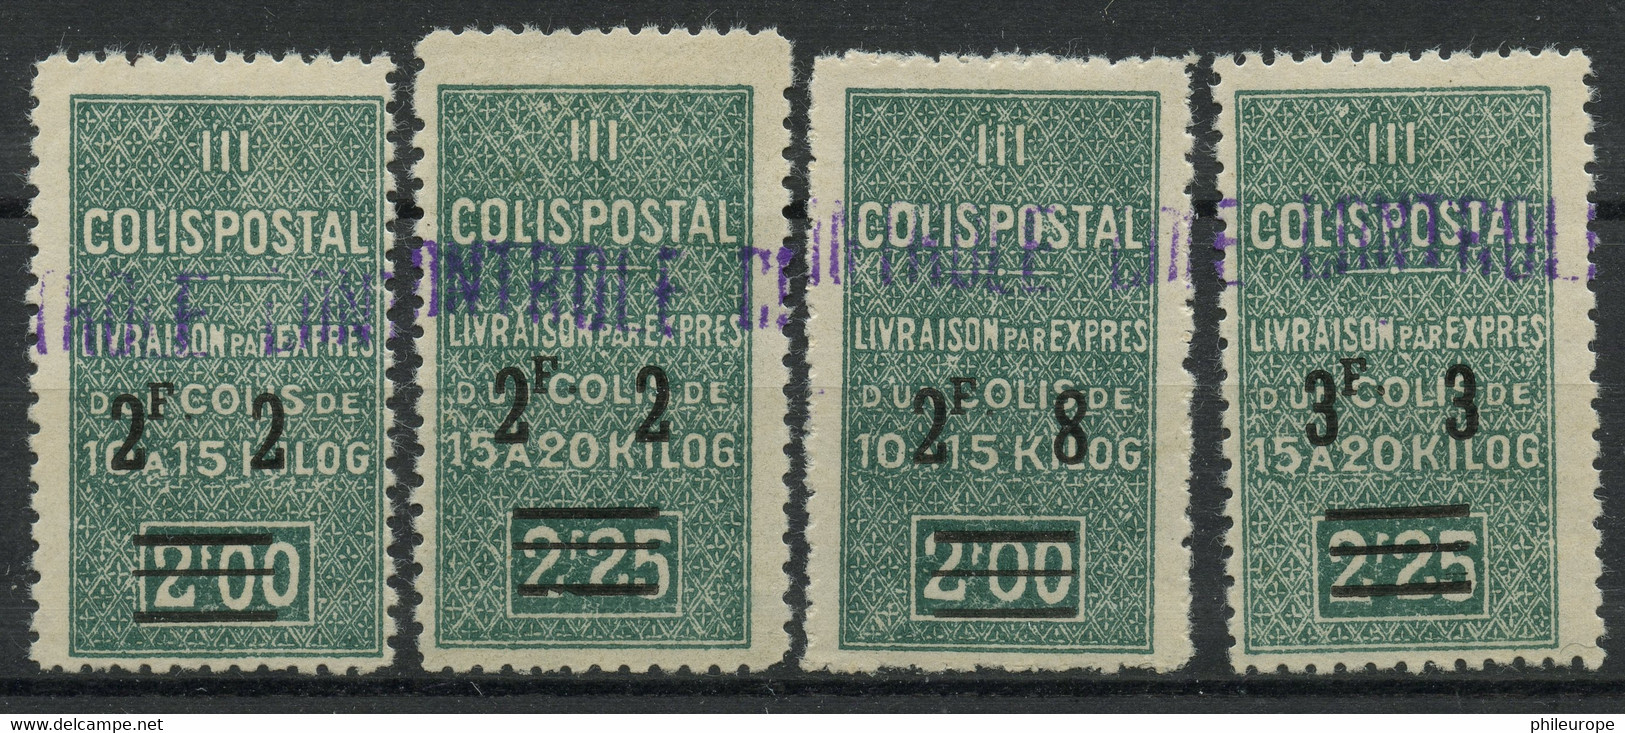 Algerie (1941) Colis Postaux N 73 A 76 (charniere) - Parcel Post